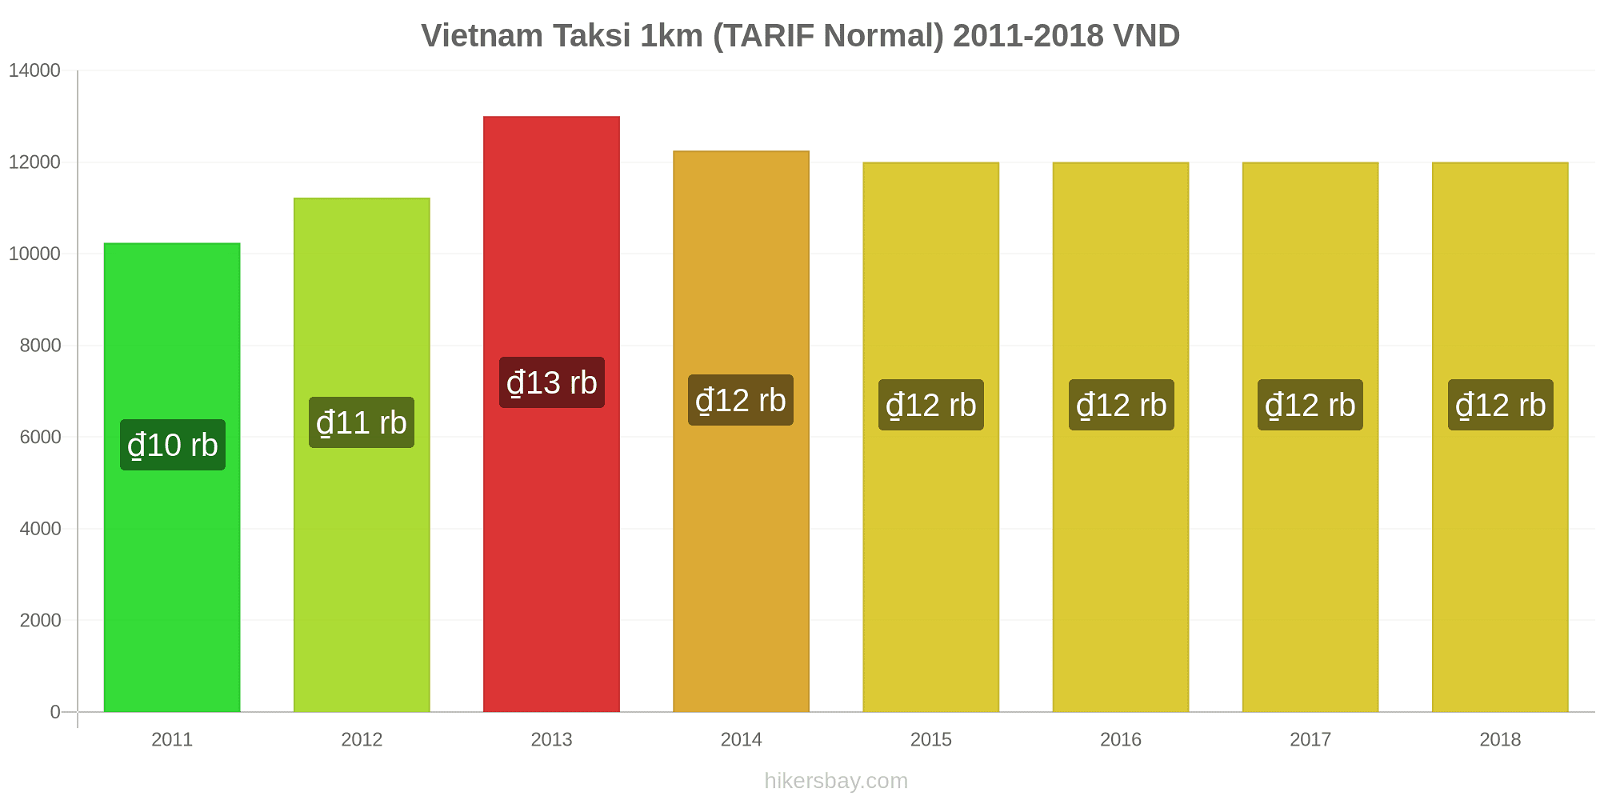 Vietnam perubahan harga Taksi 1km (Tarif Normal) hikersbay.com